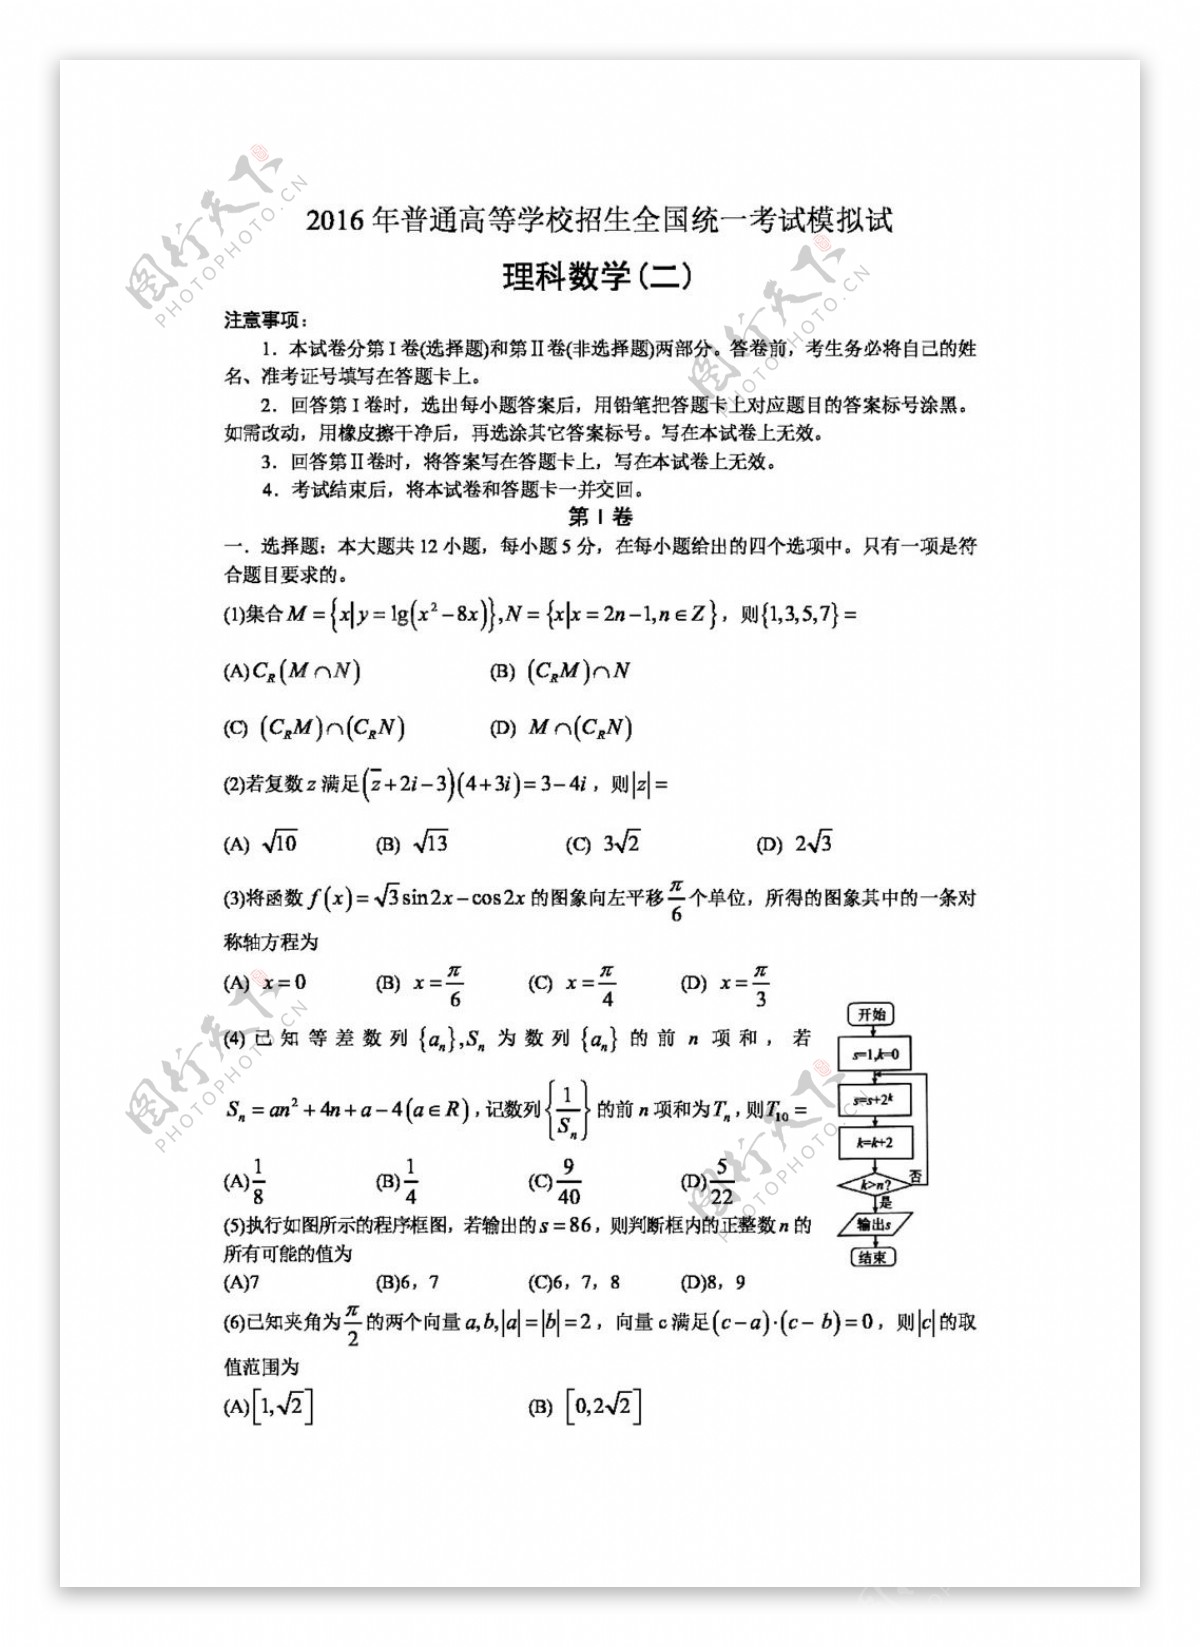 数学人教版河北省衡水中学2016届高考模拟押题卷金卷二数学理试题